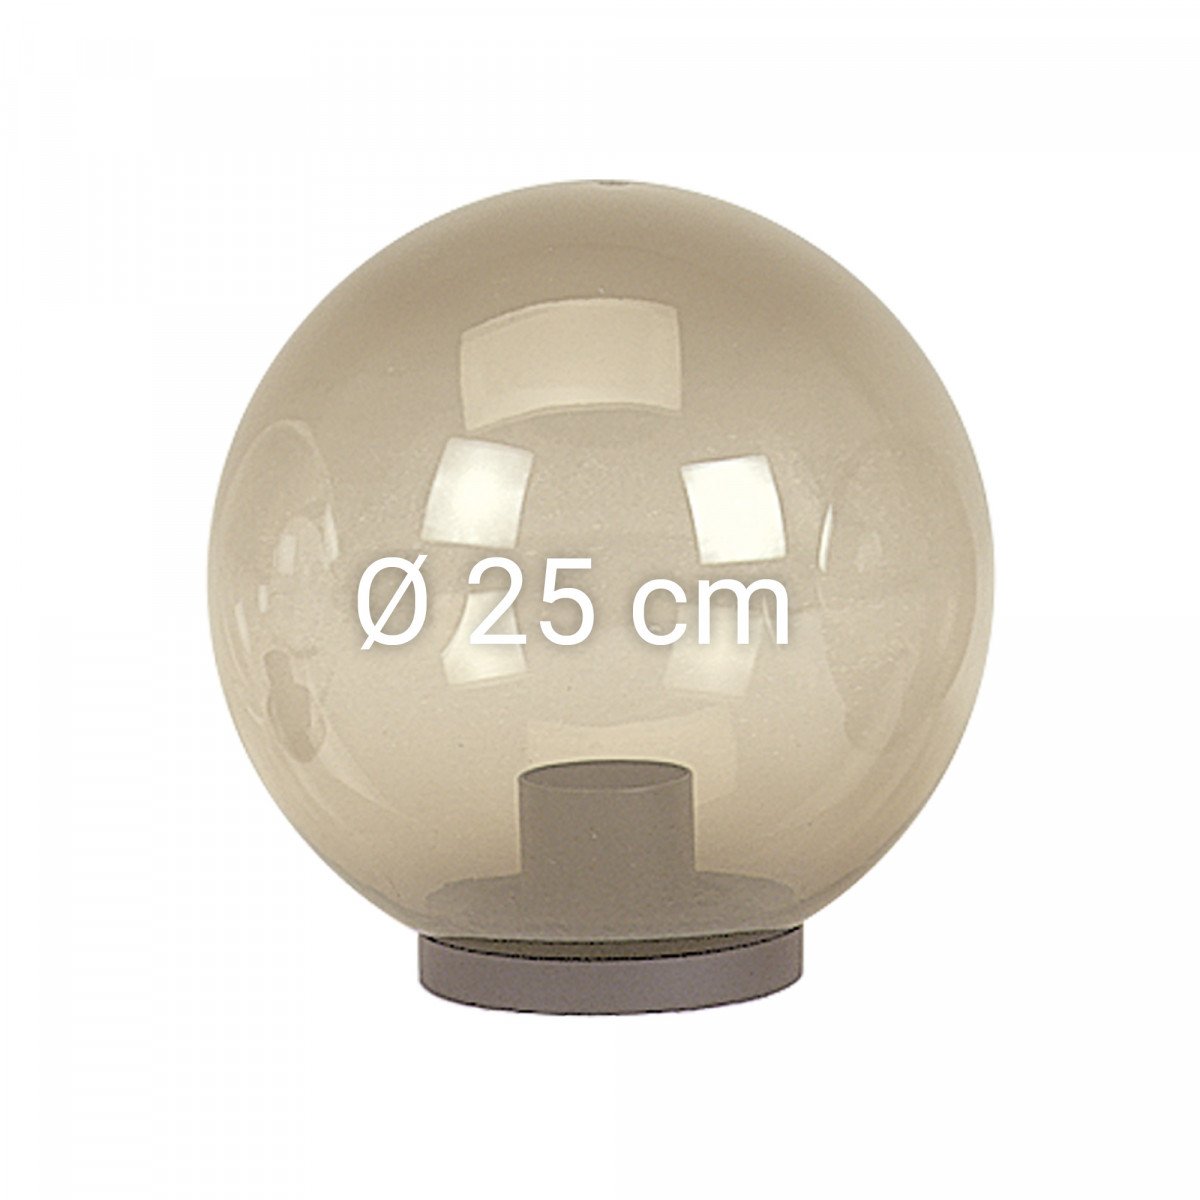 Globe en verre fumé (transparent) de 25 cm de diamètre avec collerette (3712) de KS Lighting